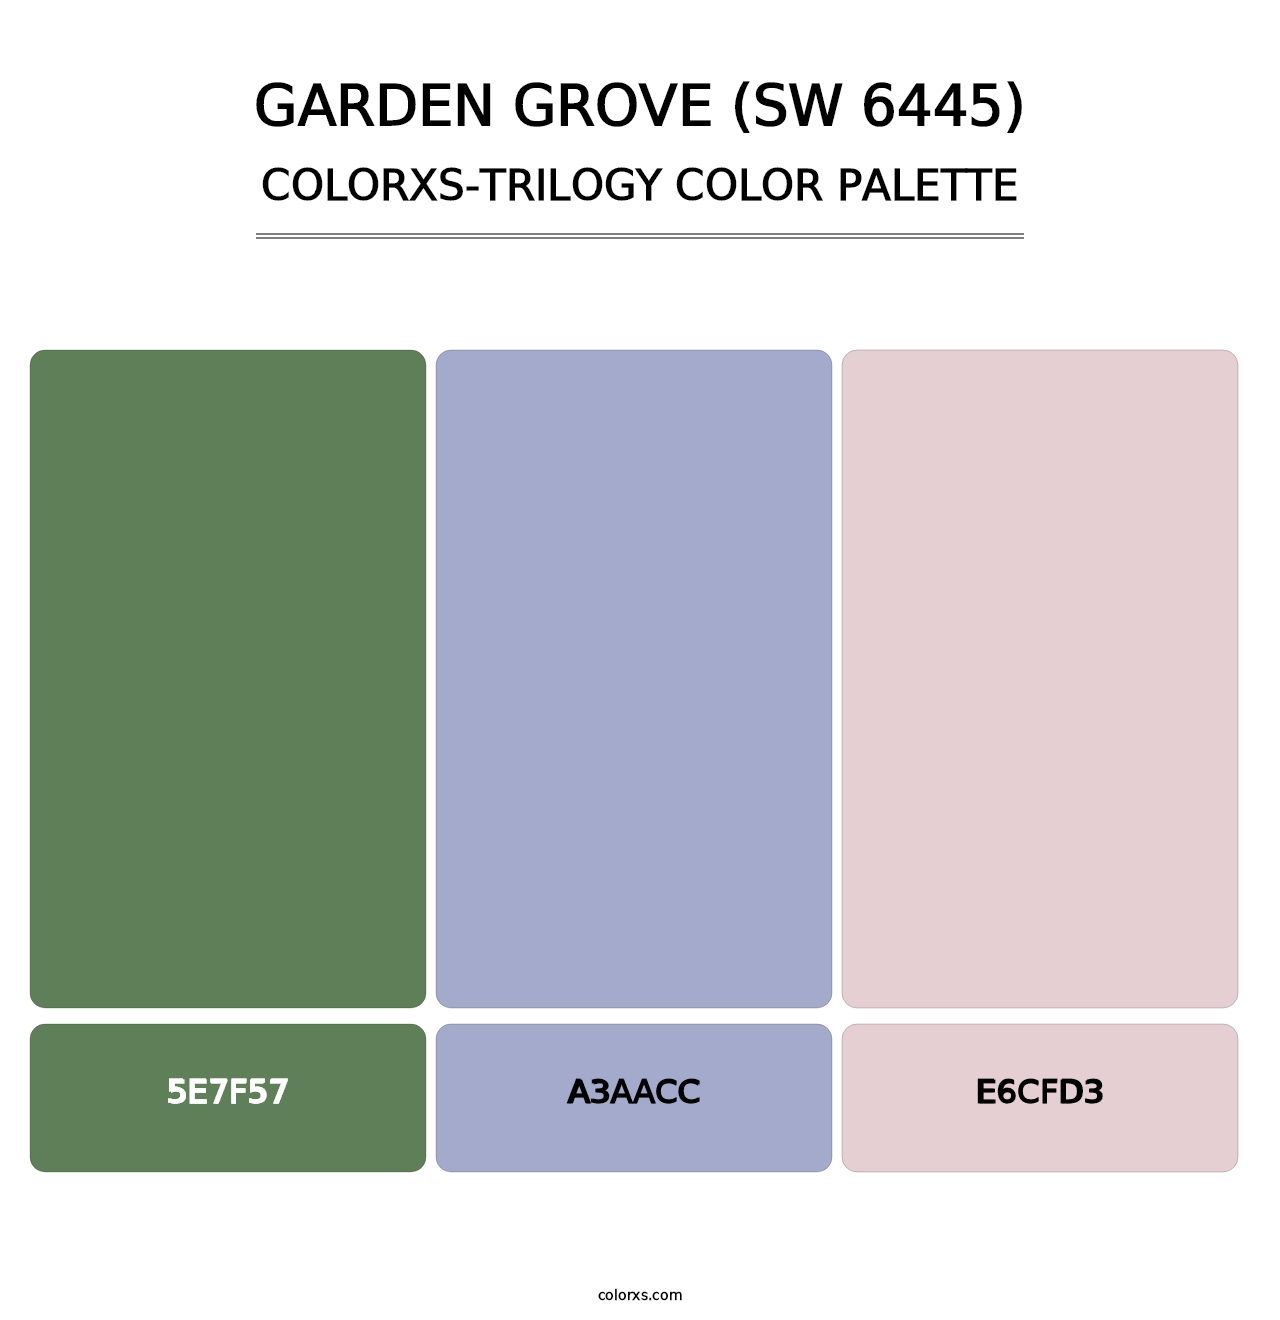 Garden Grove (SW 6445) - Colorxs Trilogy Palette